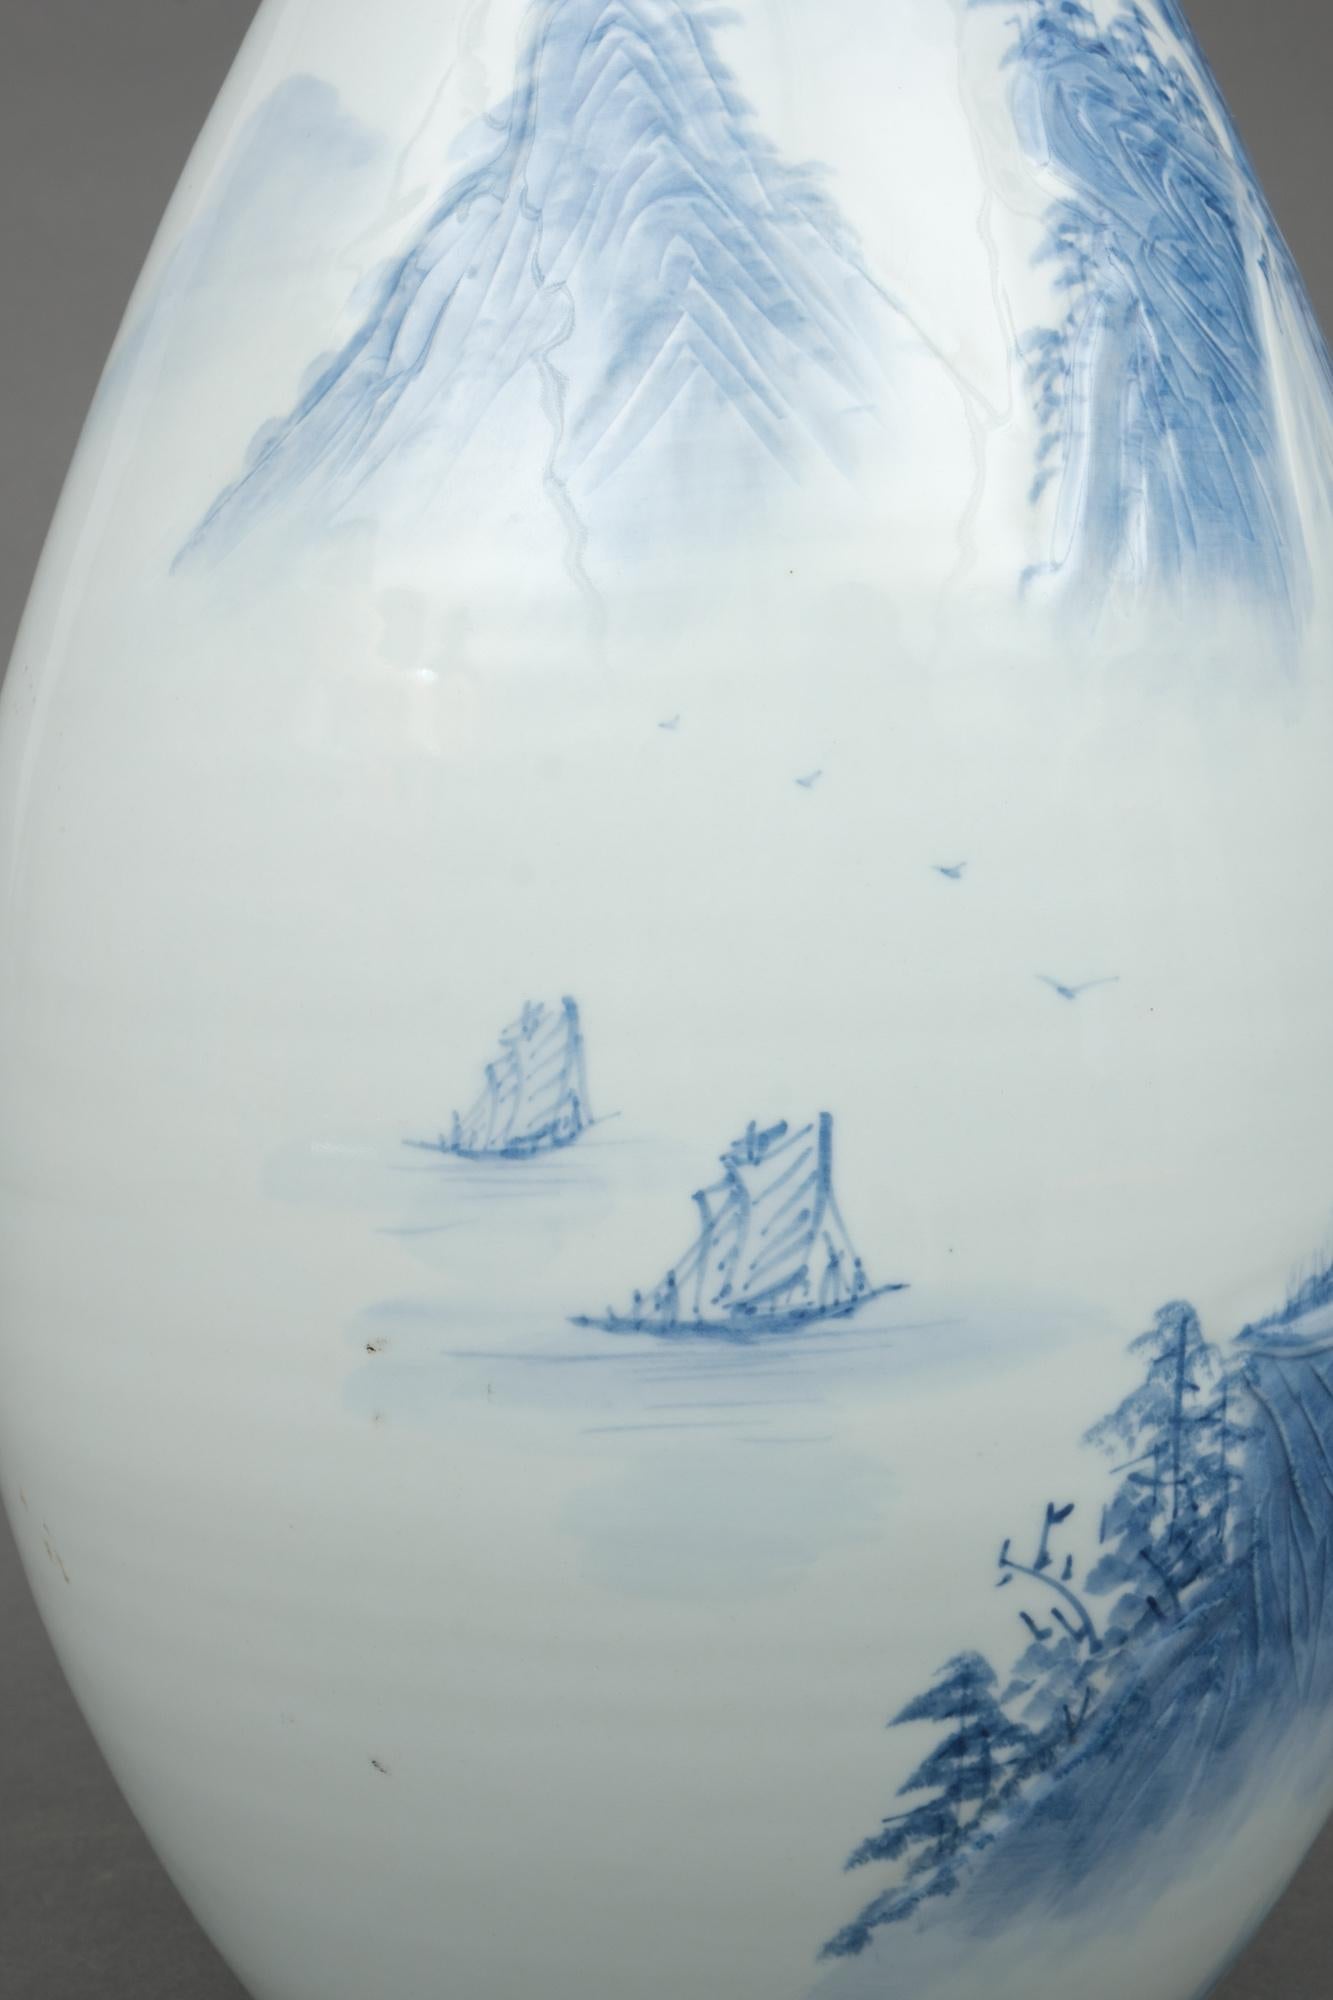 Grand vase ovoïde japonais en porcelaine avec paysage bleu et blanc, par Shigan 芝岩 2